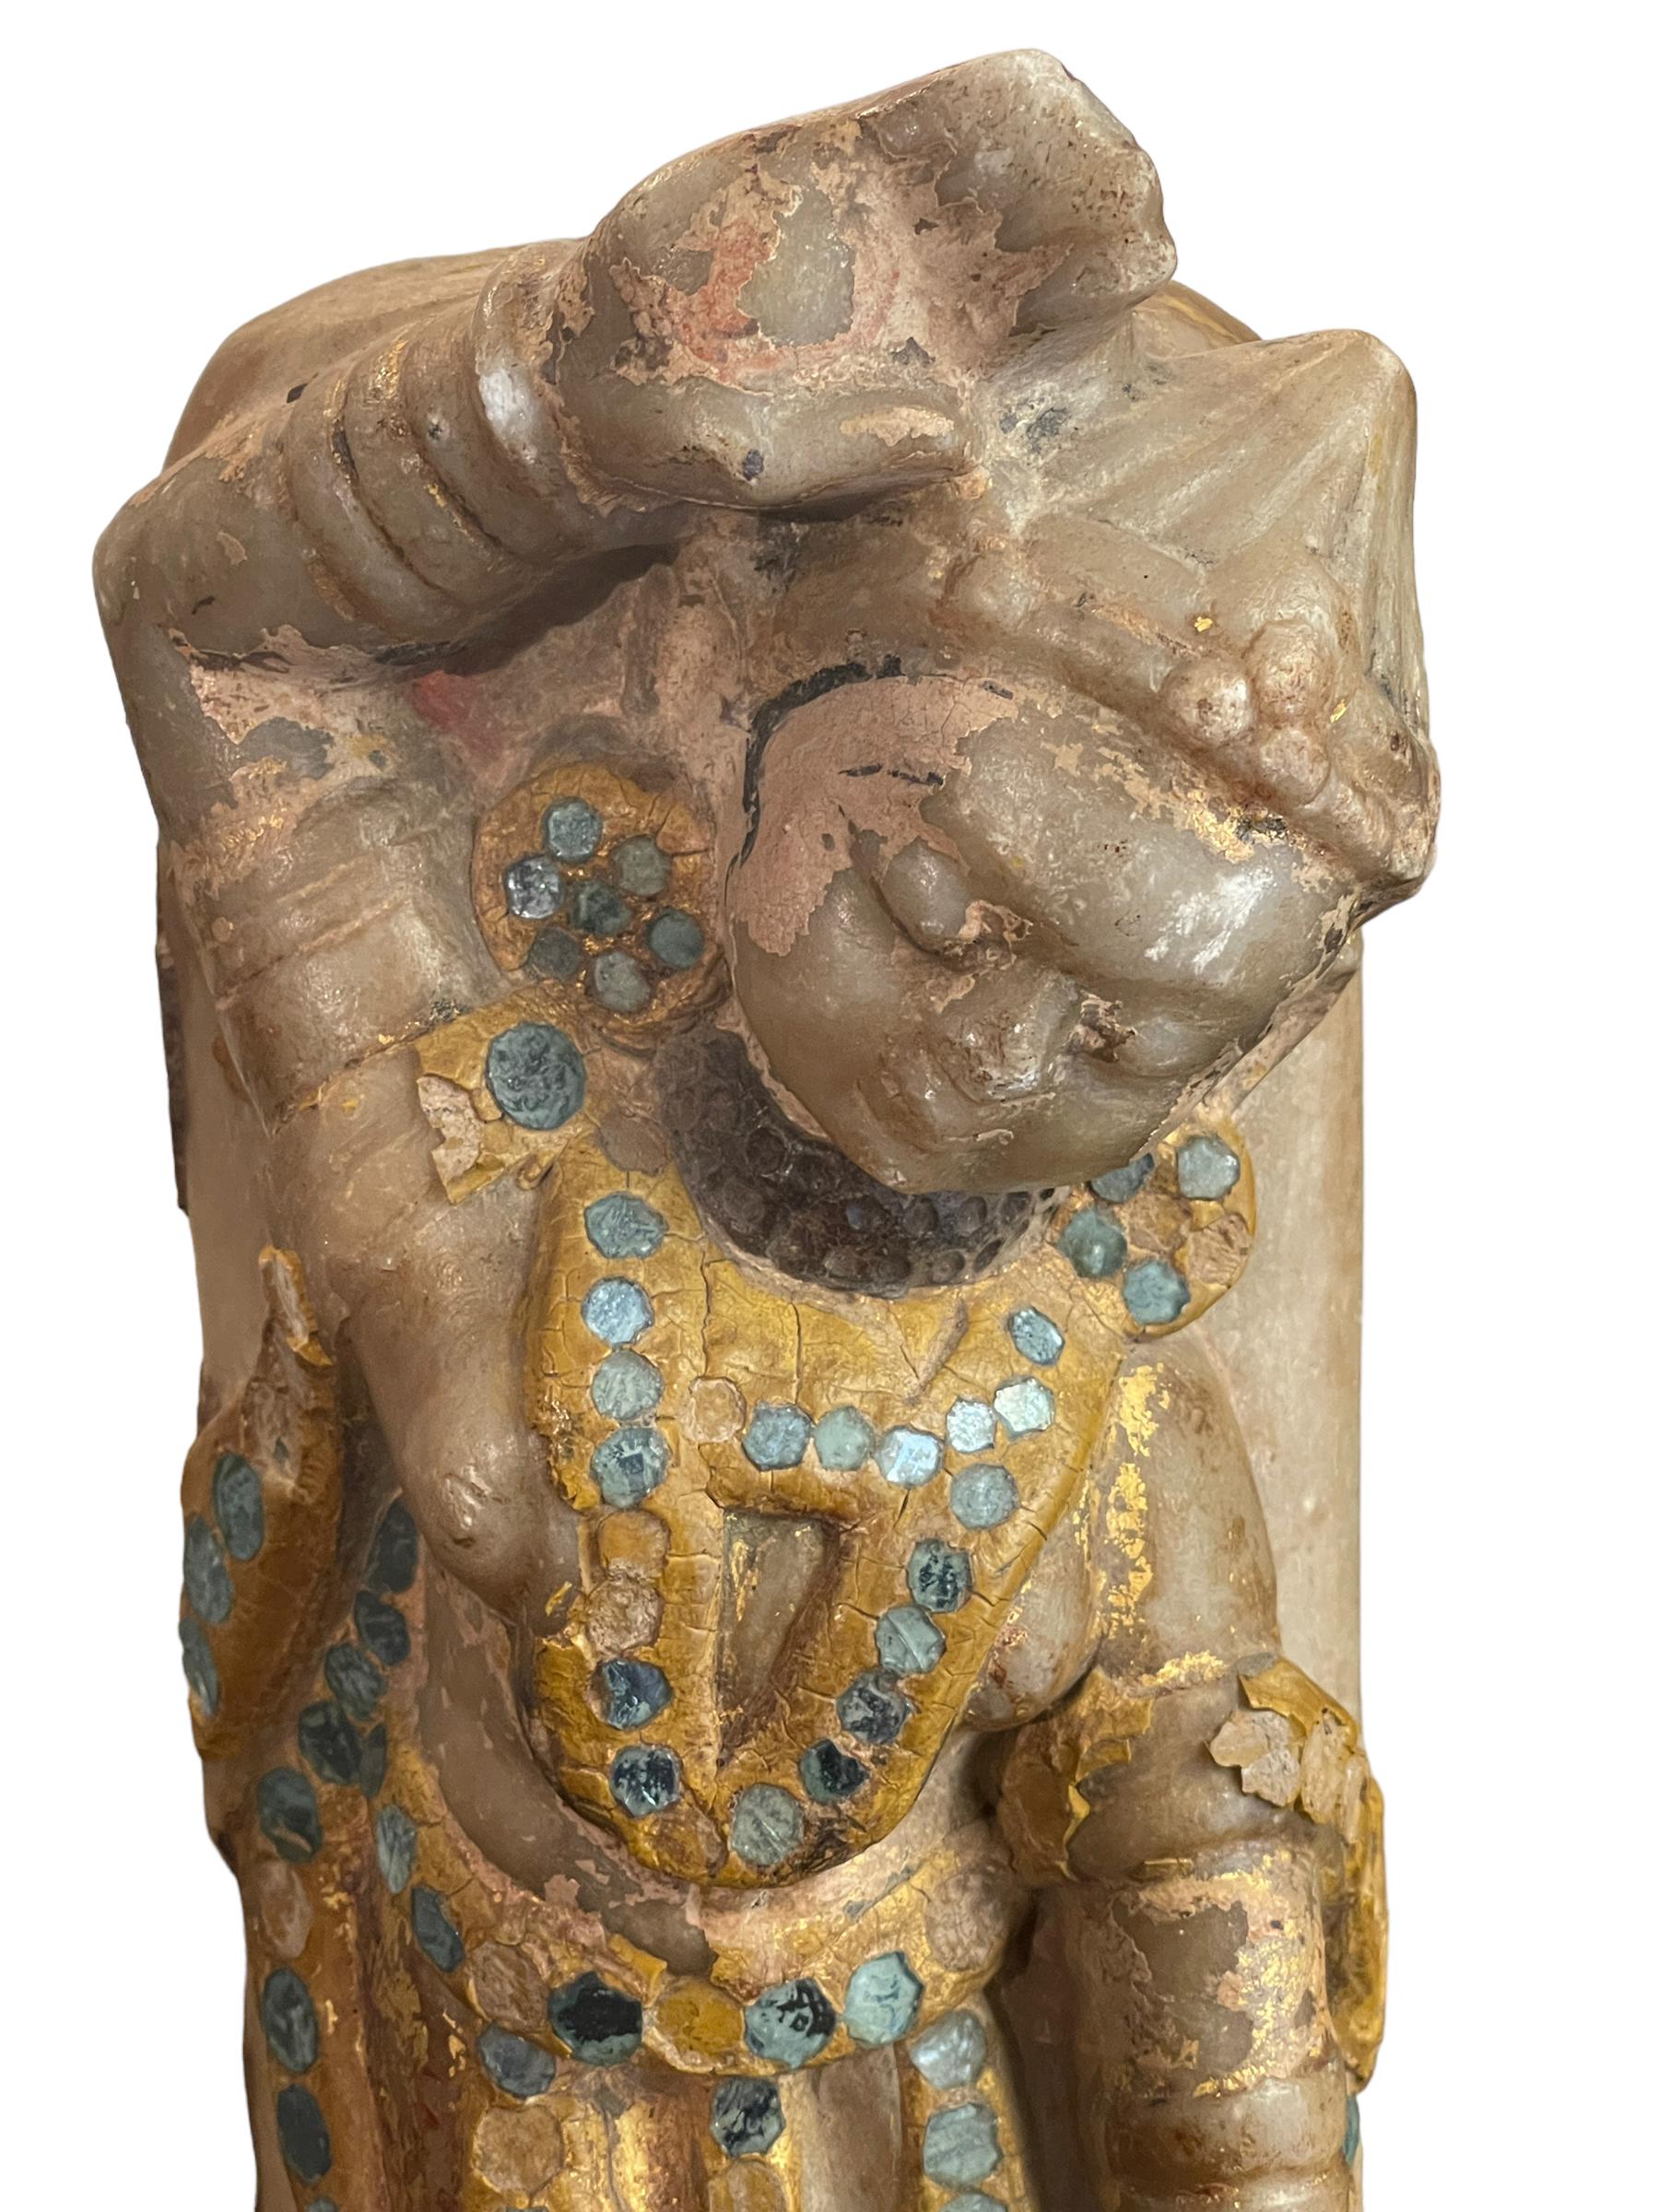 statue indienne d'Abrahame dansant
Élégante statue indienne d'Apsara dansante en albâtre et verre, du XVIIIe siècle
Dimensions : 11x8cm, hauteur 32cm
Poids : 4,87 kg